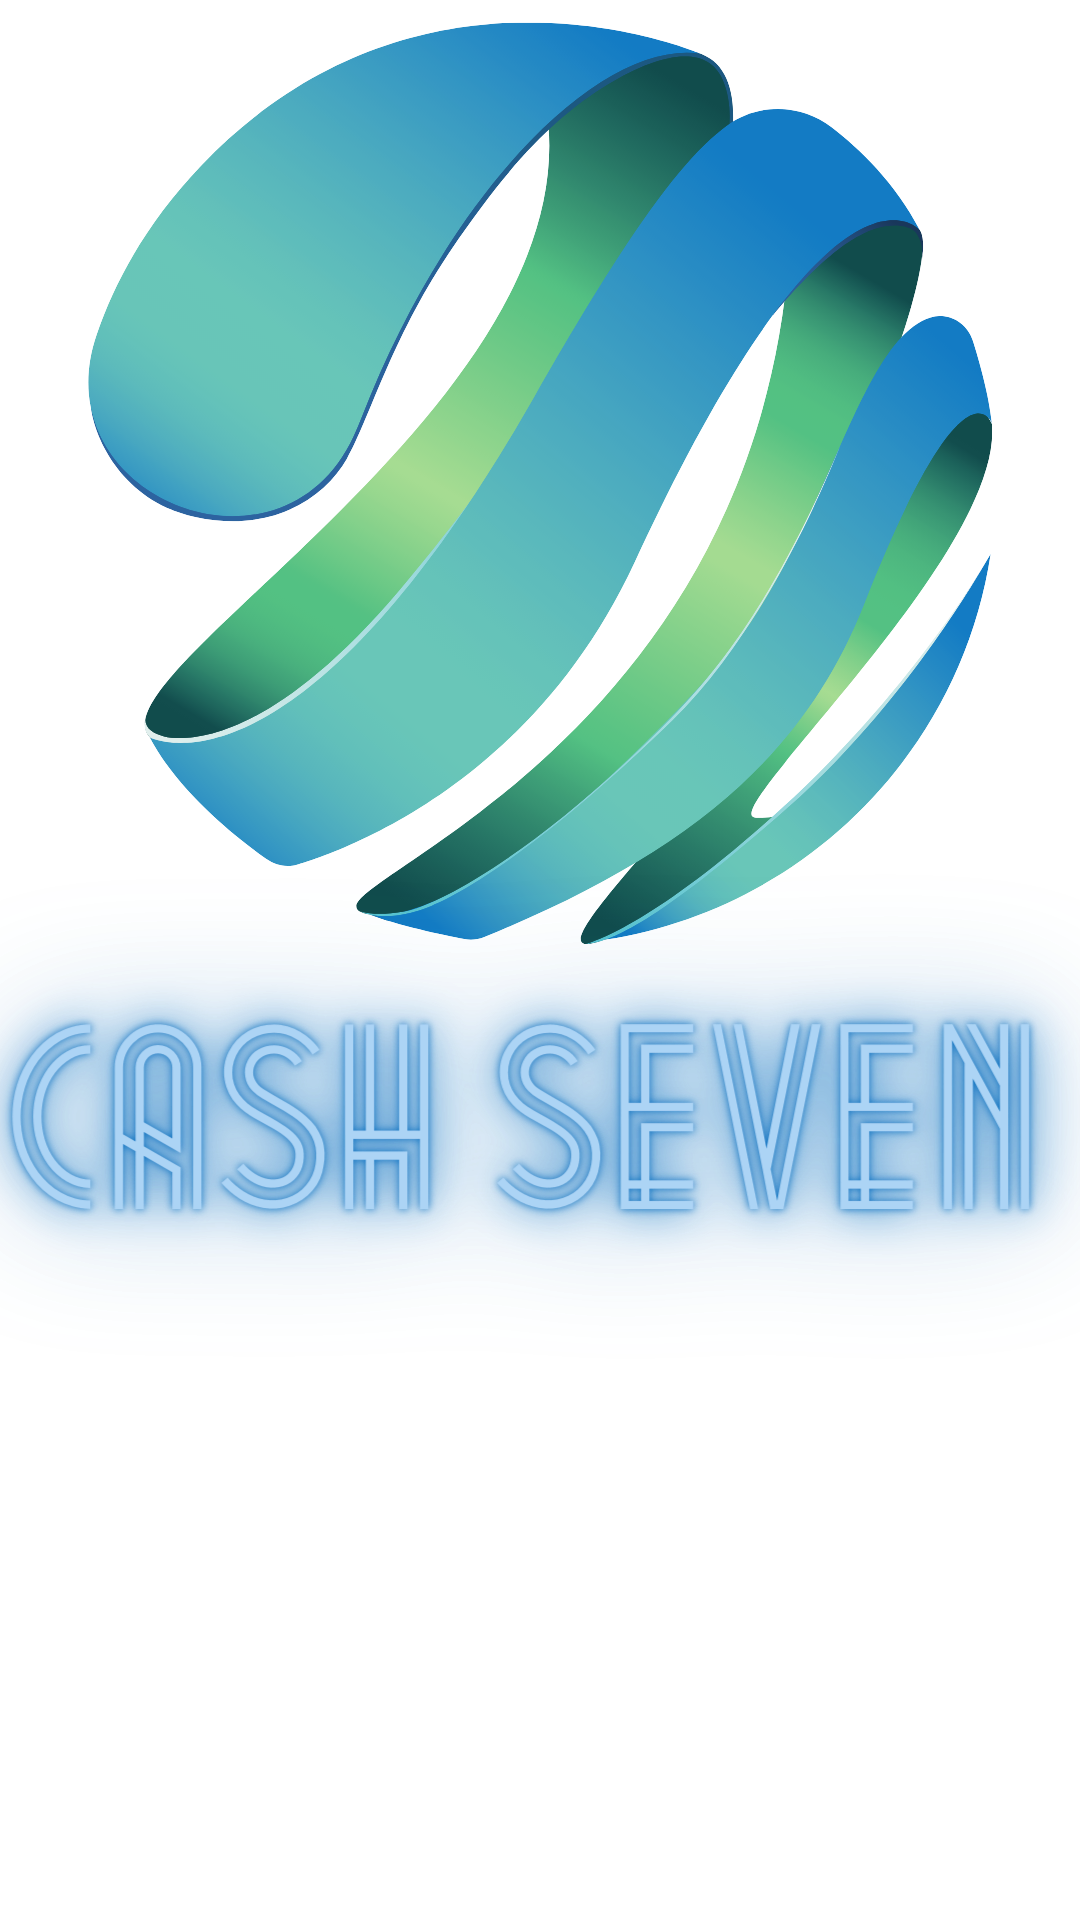 CASH SEVEN